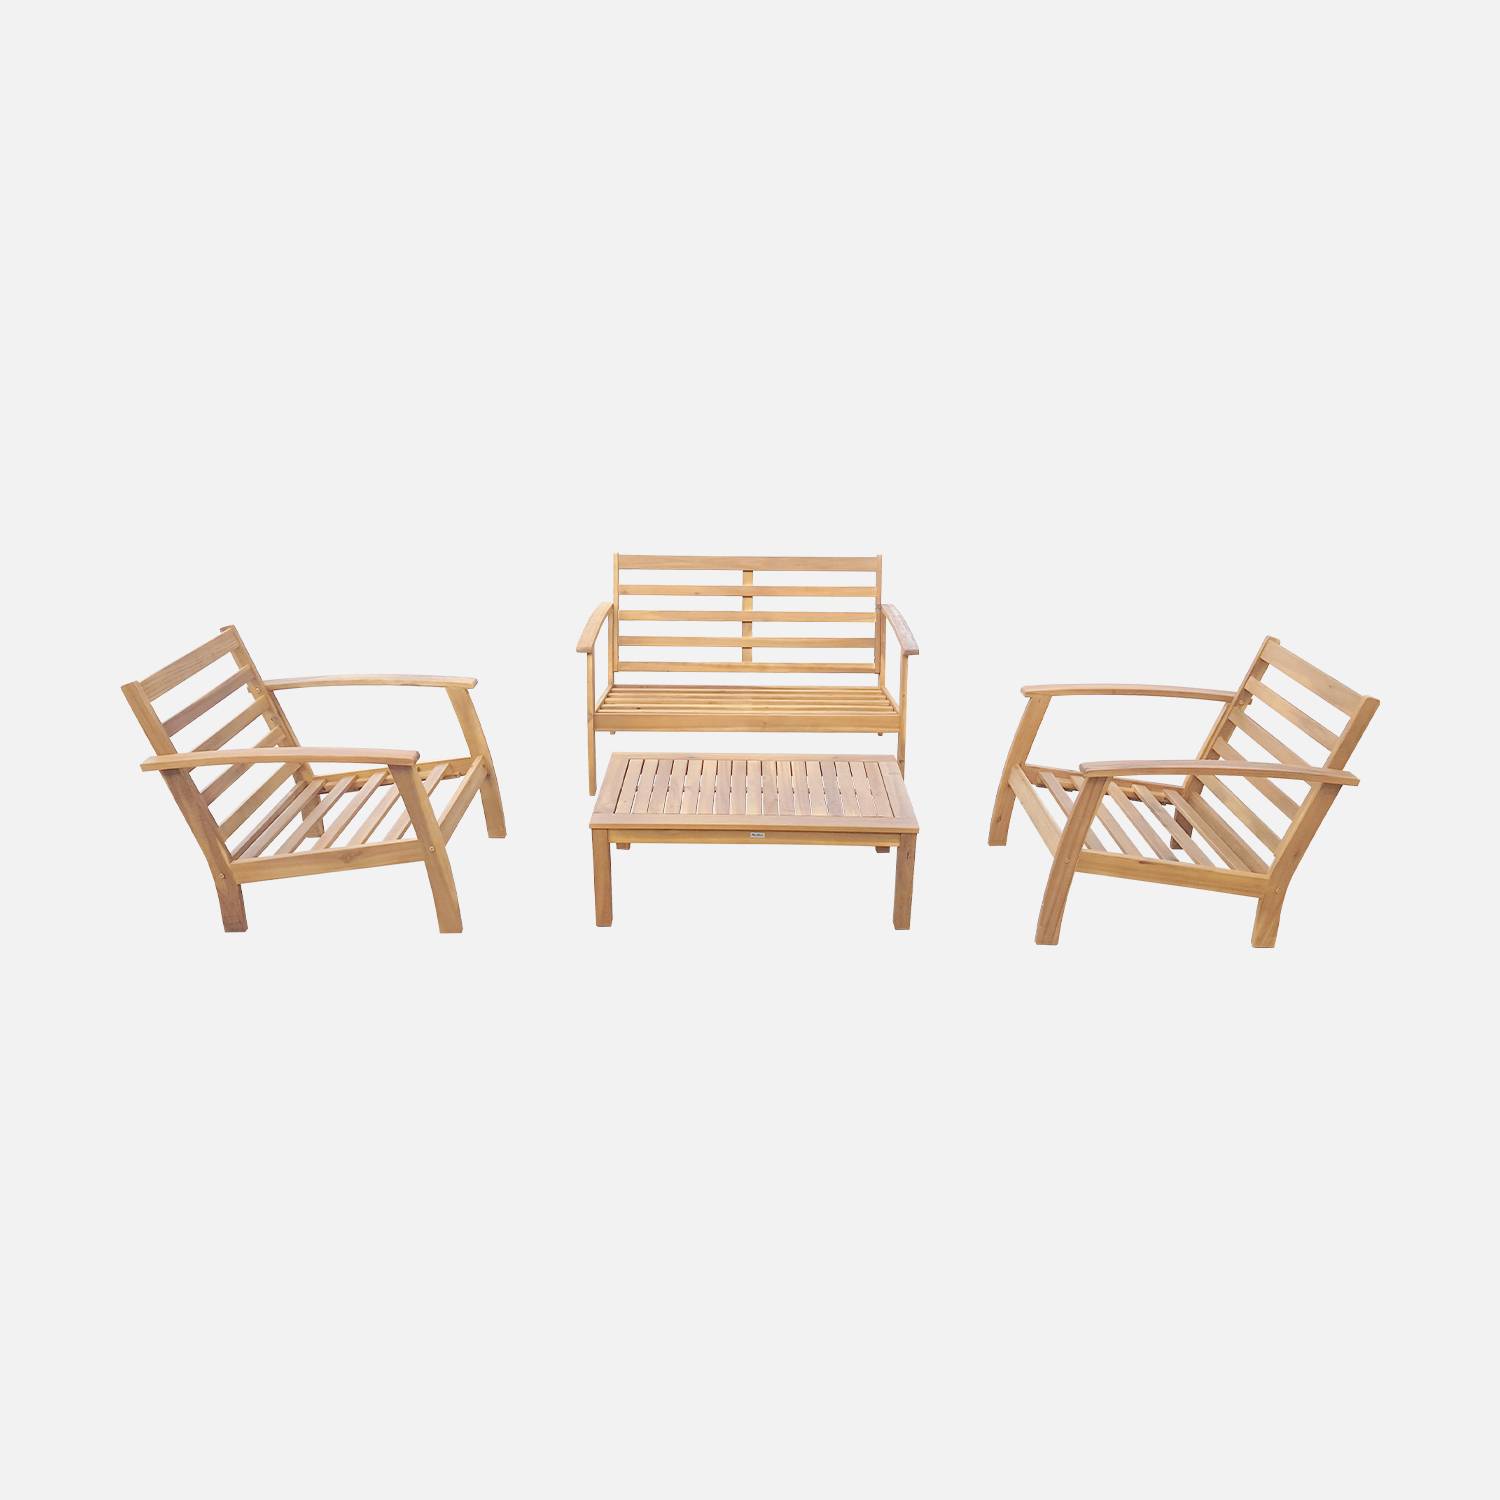 Salon de jardin en bois 4 places - Ushuaïa - Coussins bleu canard, canapé, fauteuils et table basse en acacia, design Photo6